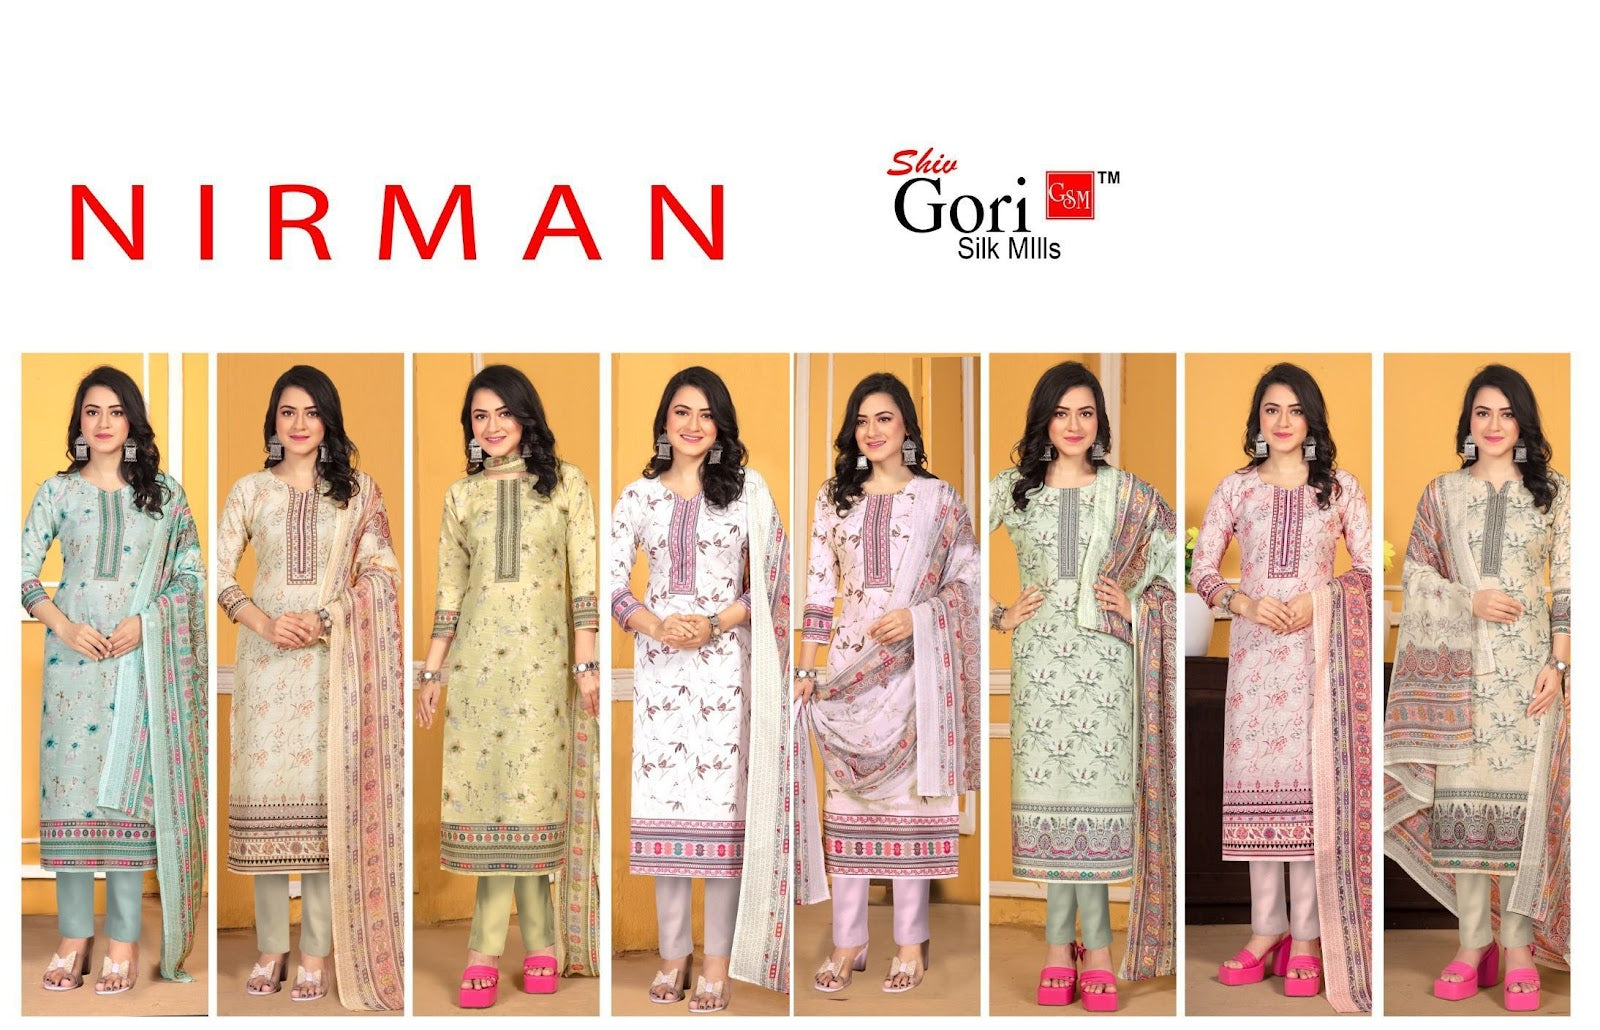 Nirman Vol 1 Shiv Gori Silk Mills Rayon Pant Style Suits